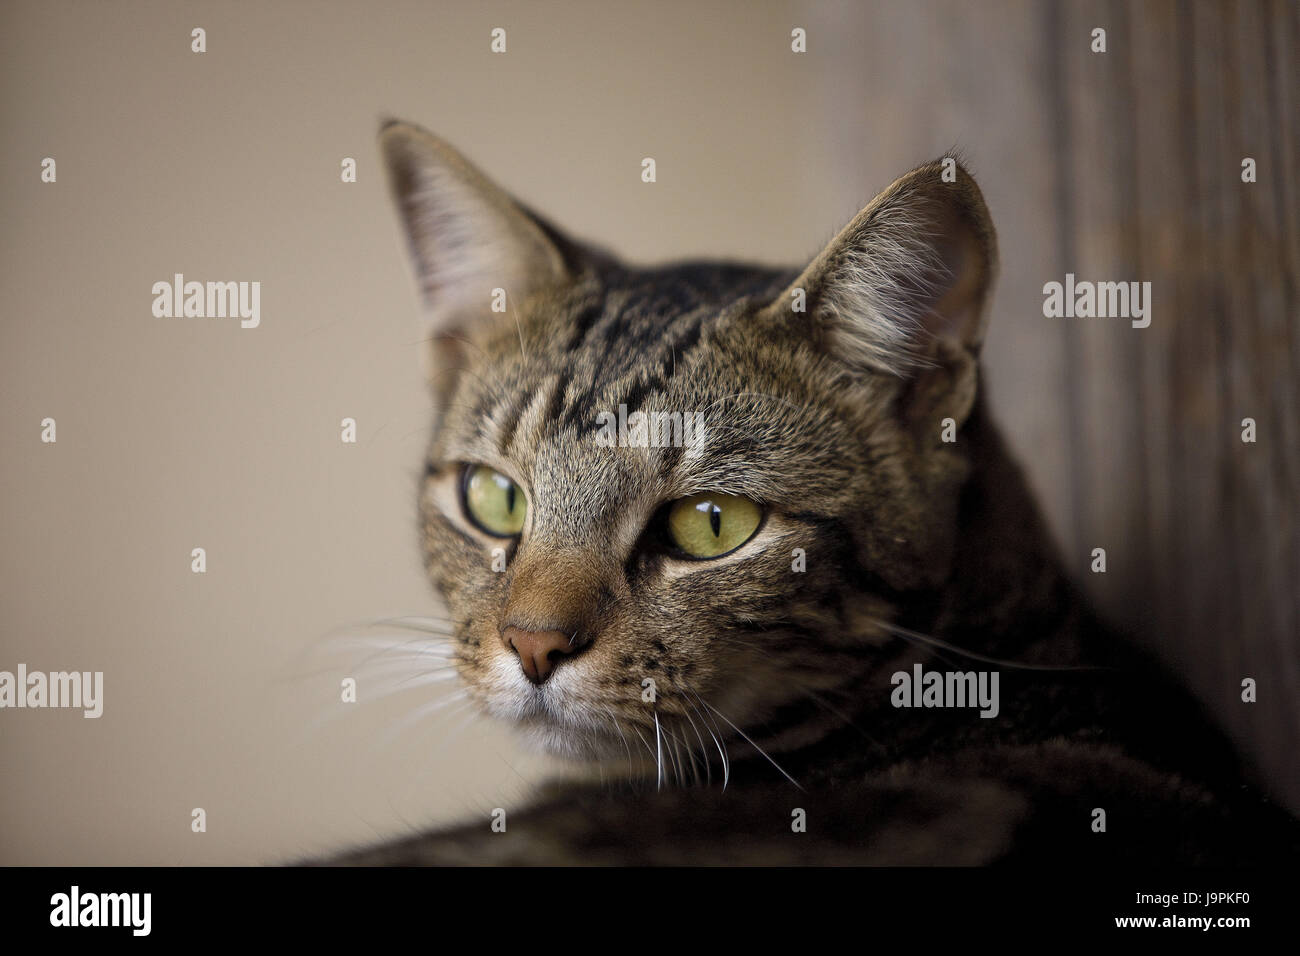 House cat,portrait, Stock Photo